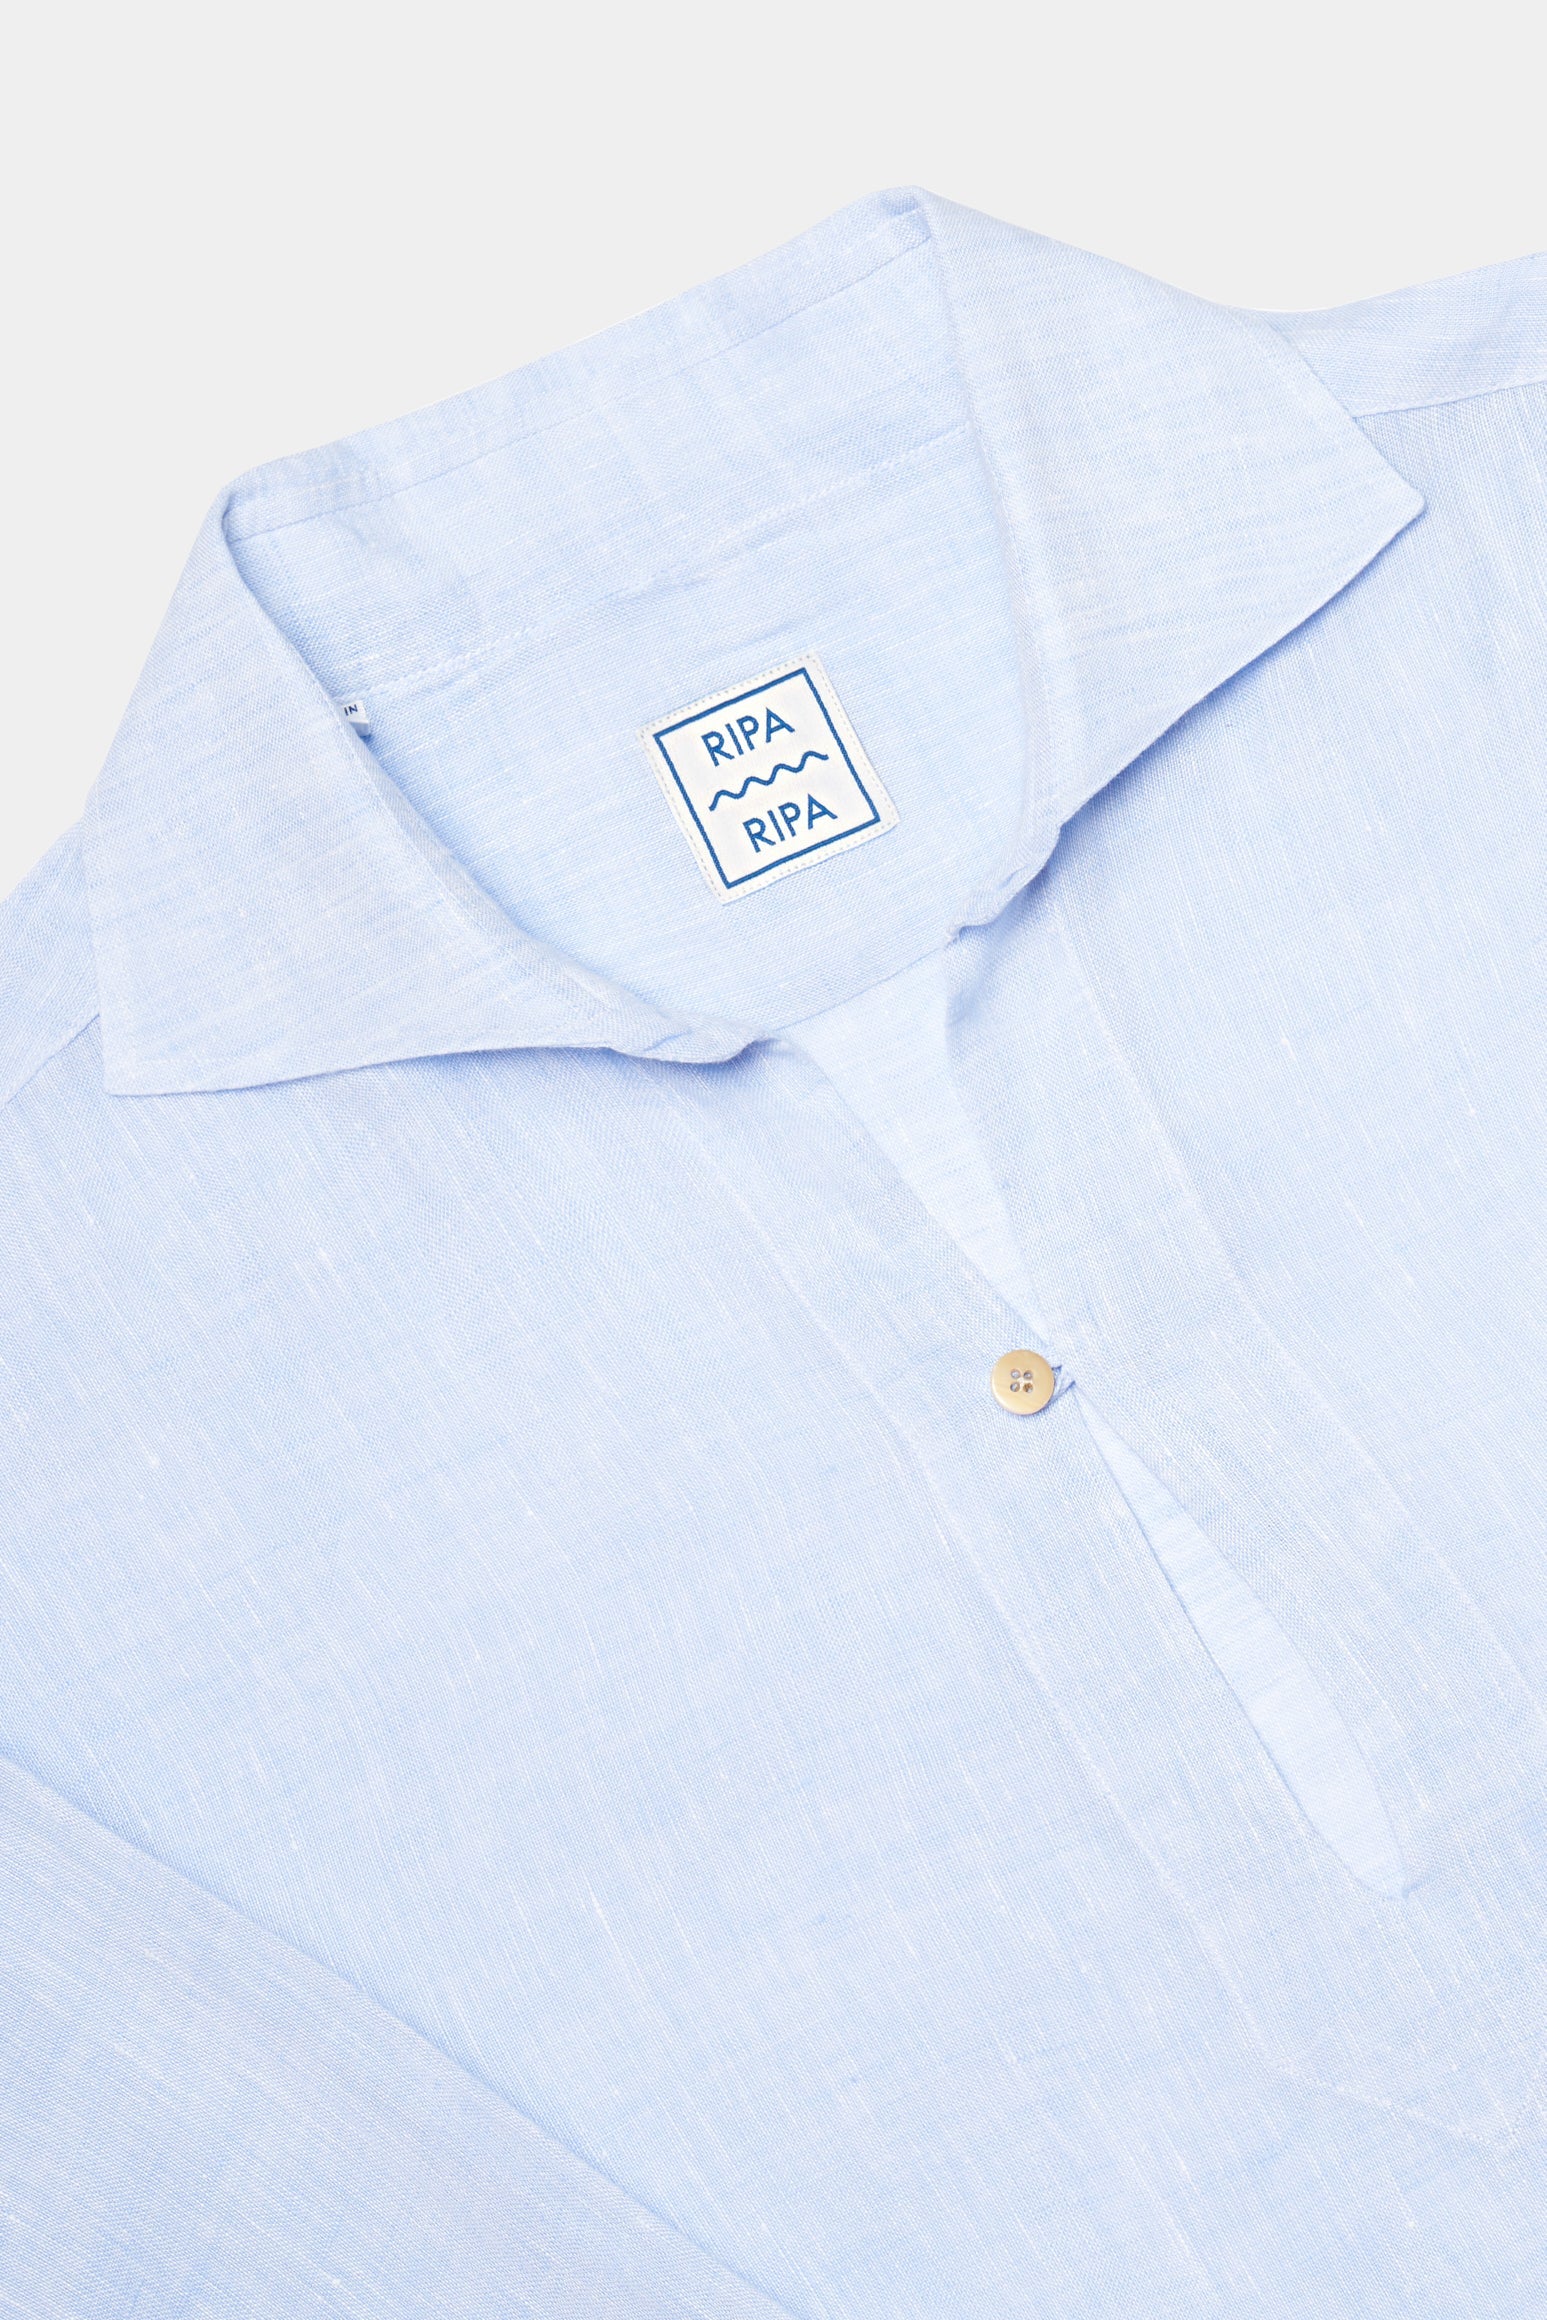 Made in Italy Light Blue Capri Linen Shirt for Men - 03